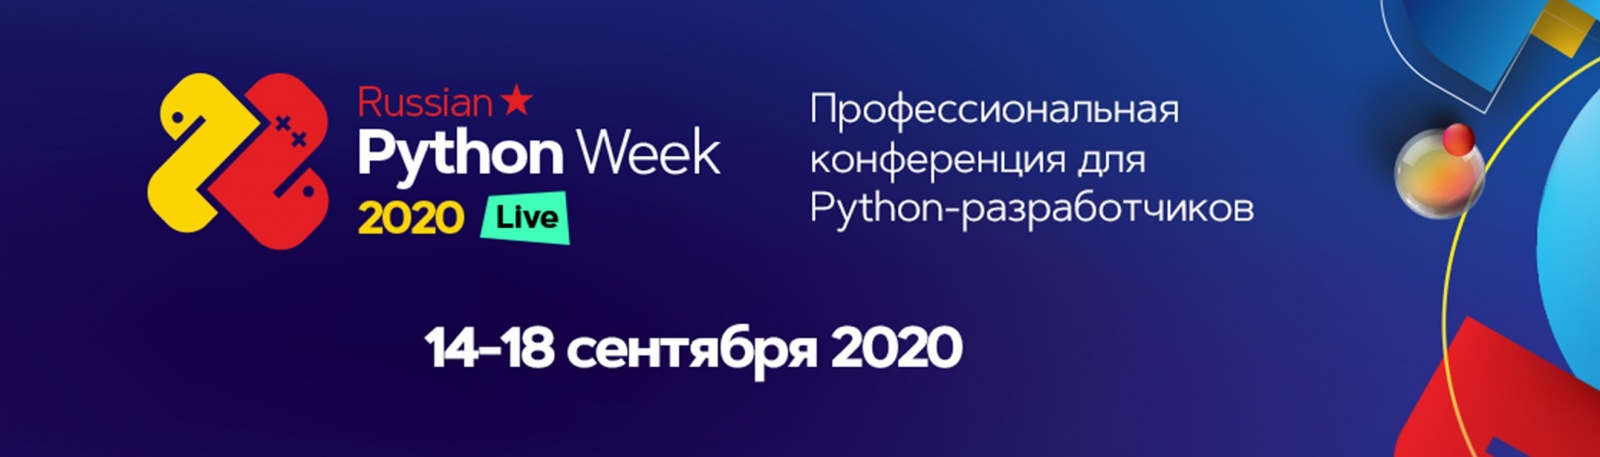 «Я что-то накодил и все упало»: провалы в Python-разработке на Russian Python Week 2020 - 1